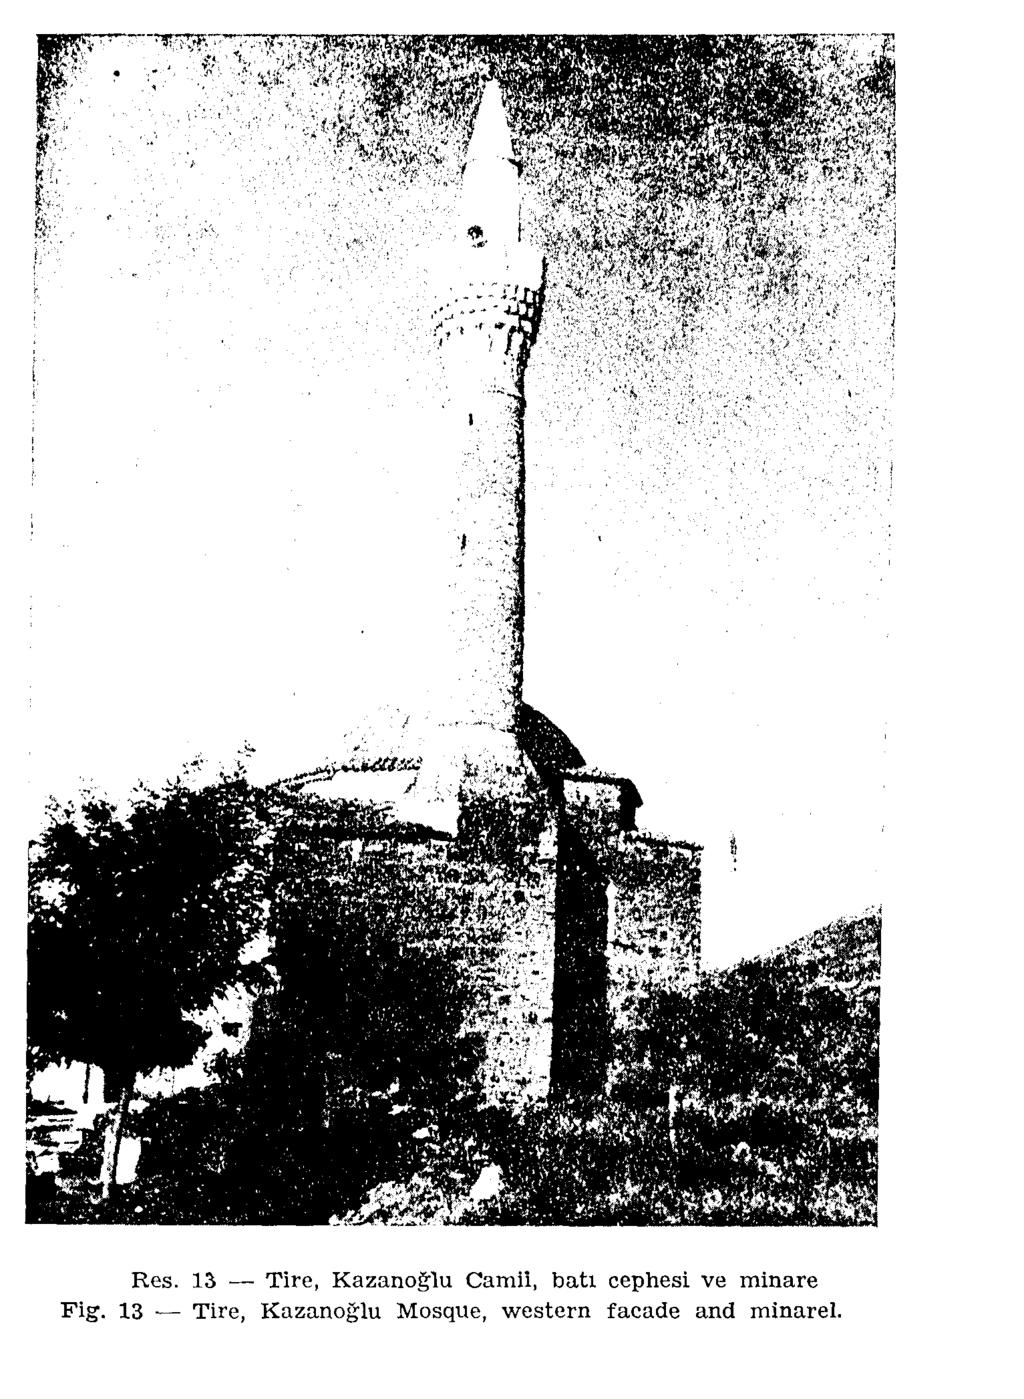 Res. 13 Tire, Kazanoglu Camii, batı cephesi ve minare